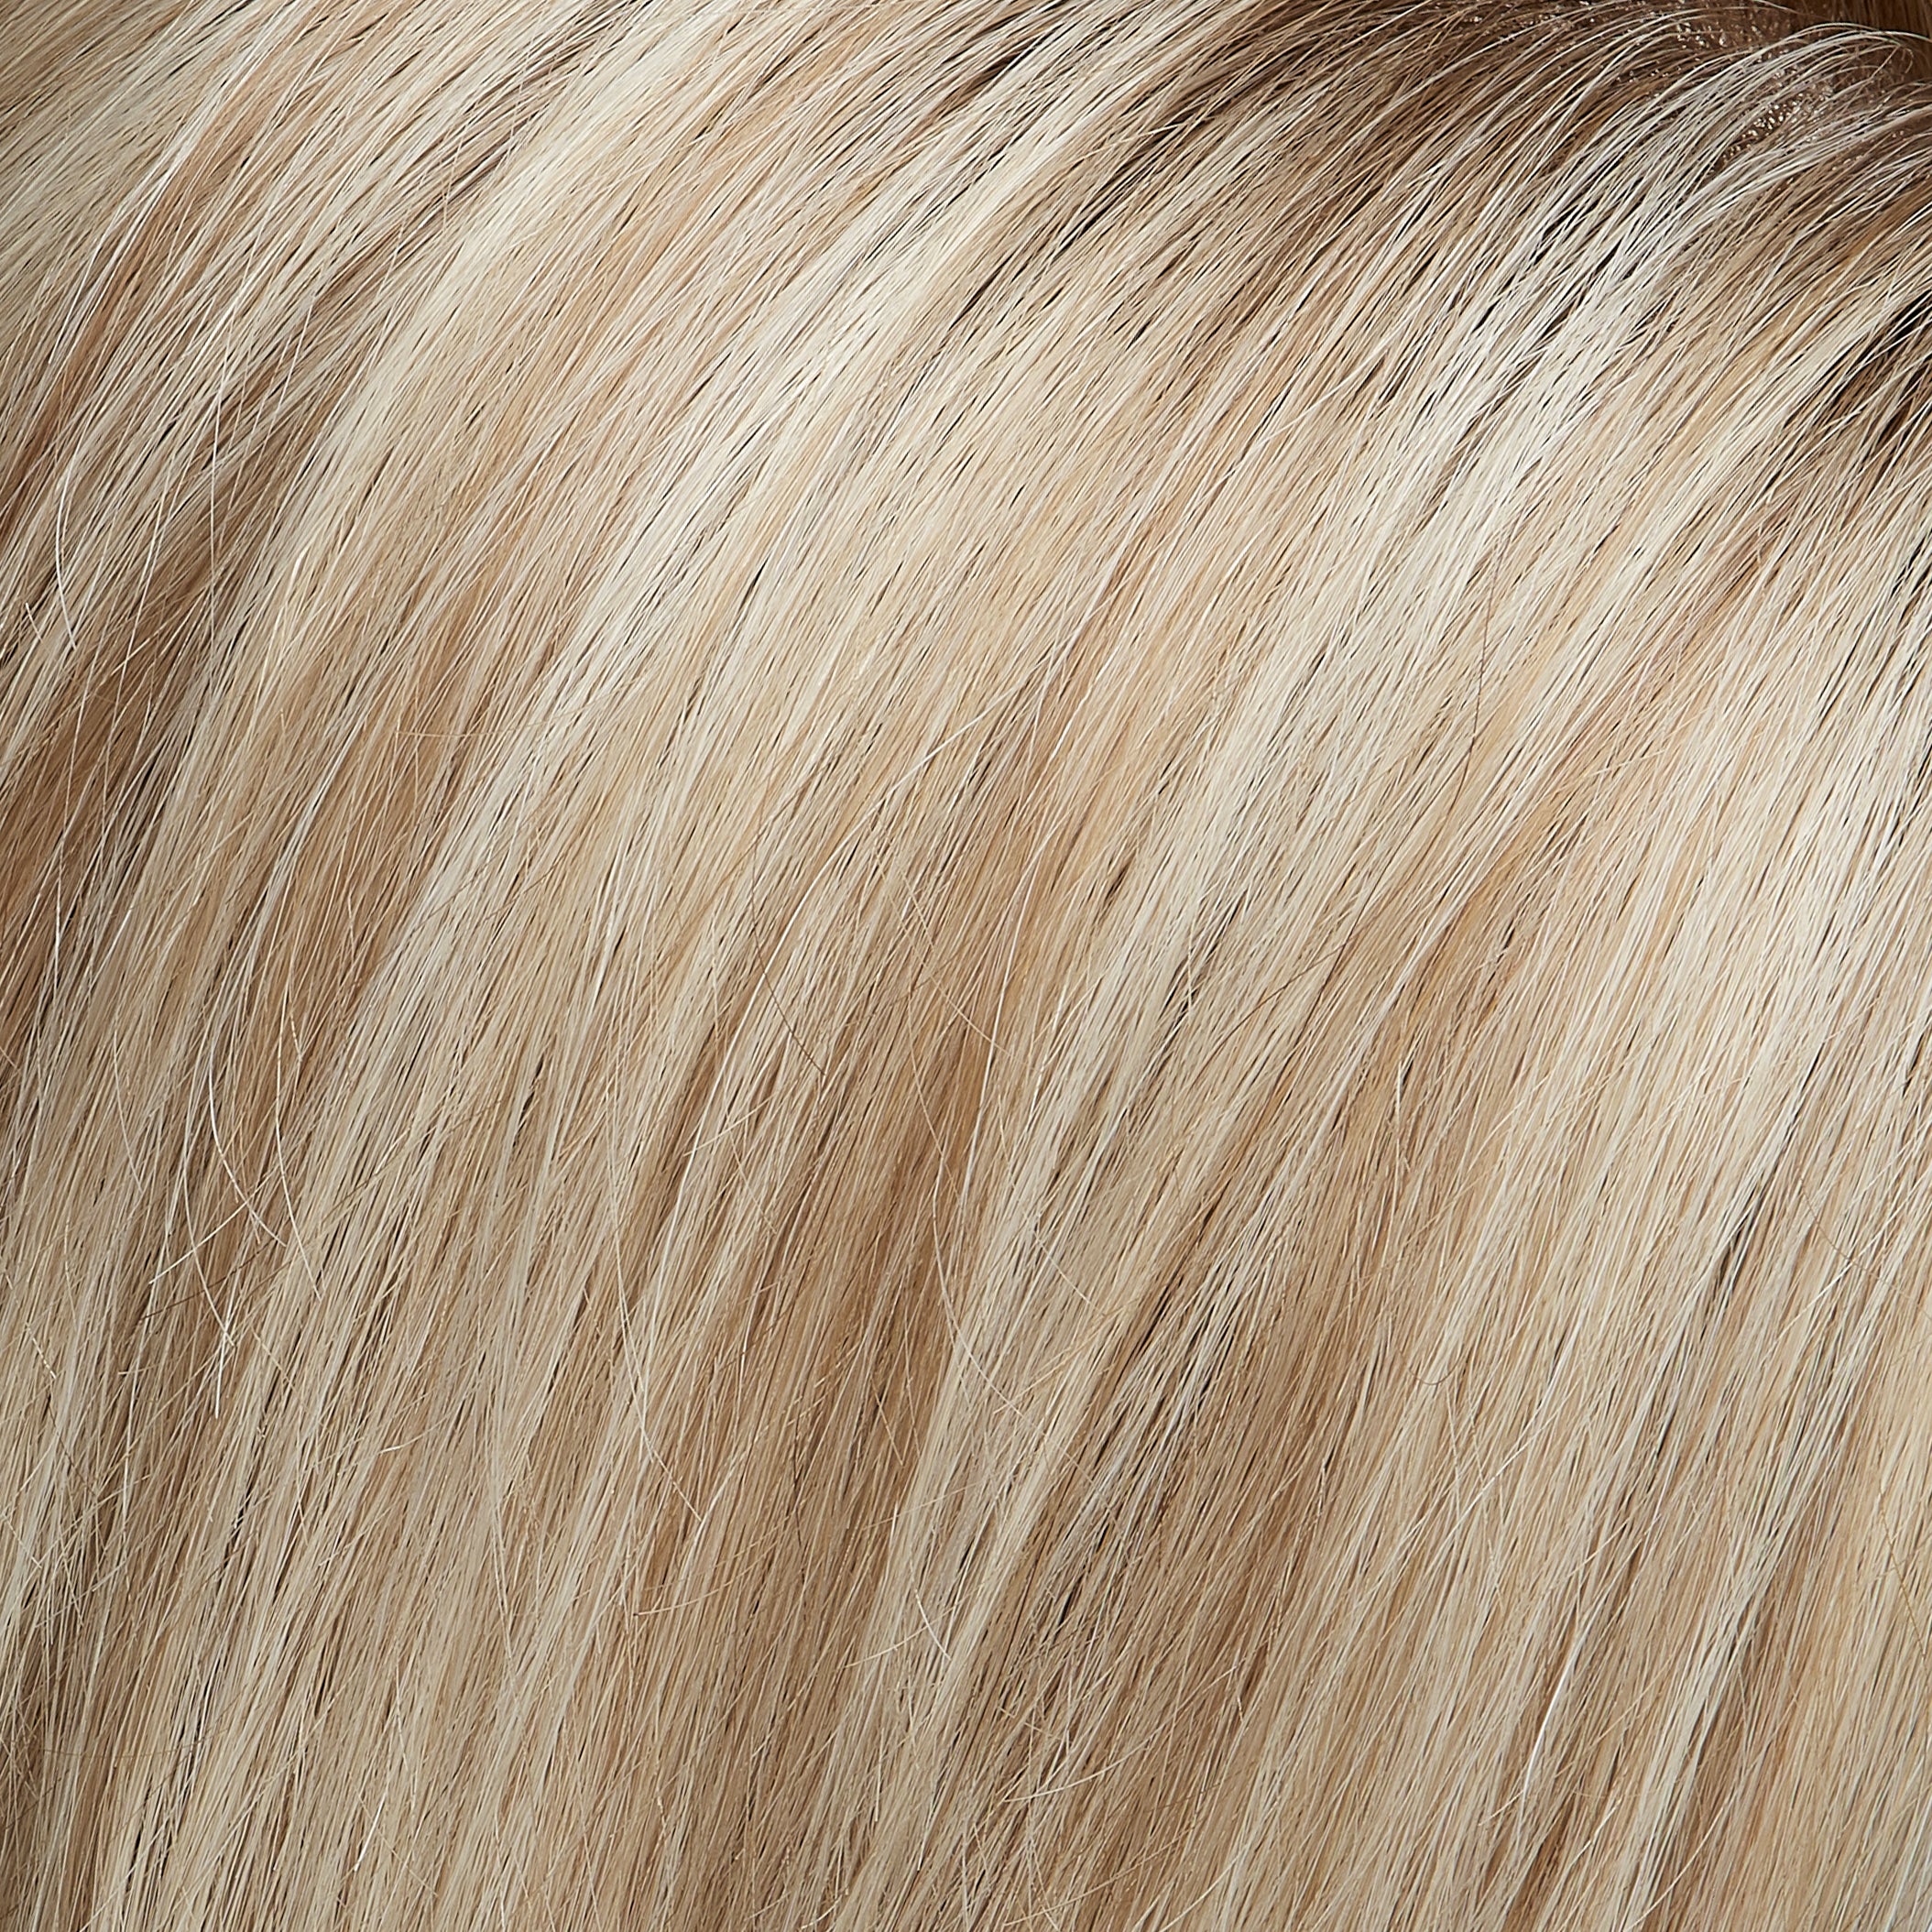 Top Blend human hair topper - Jon Renau *NEW*